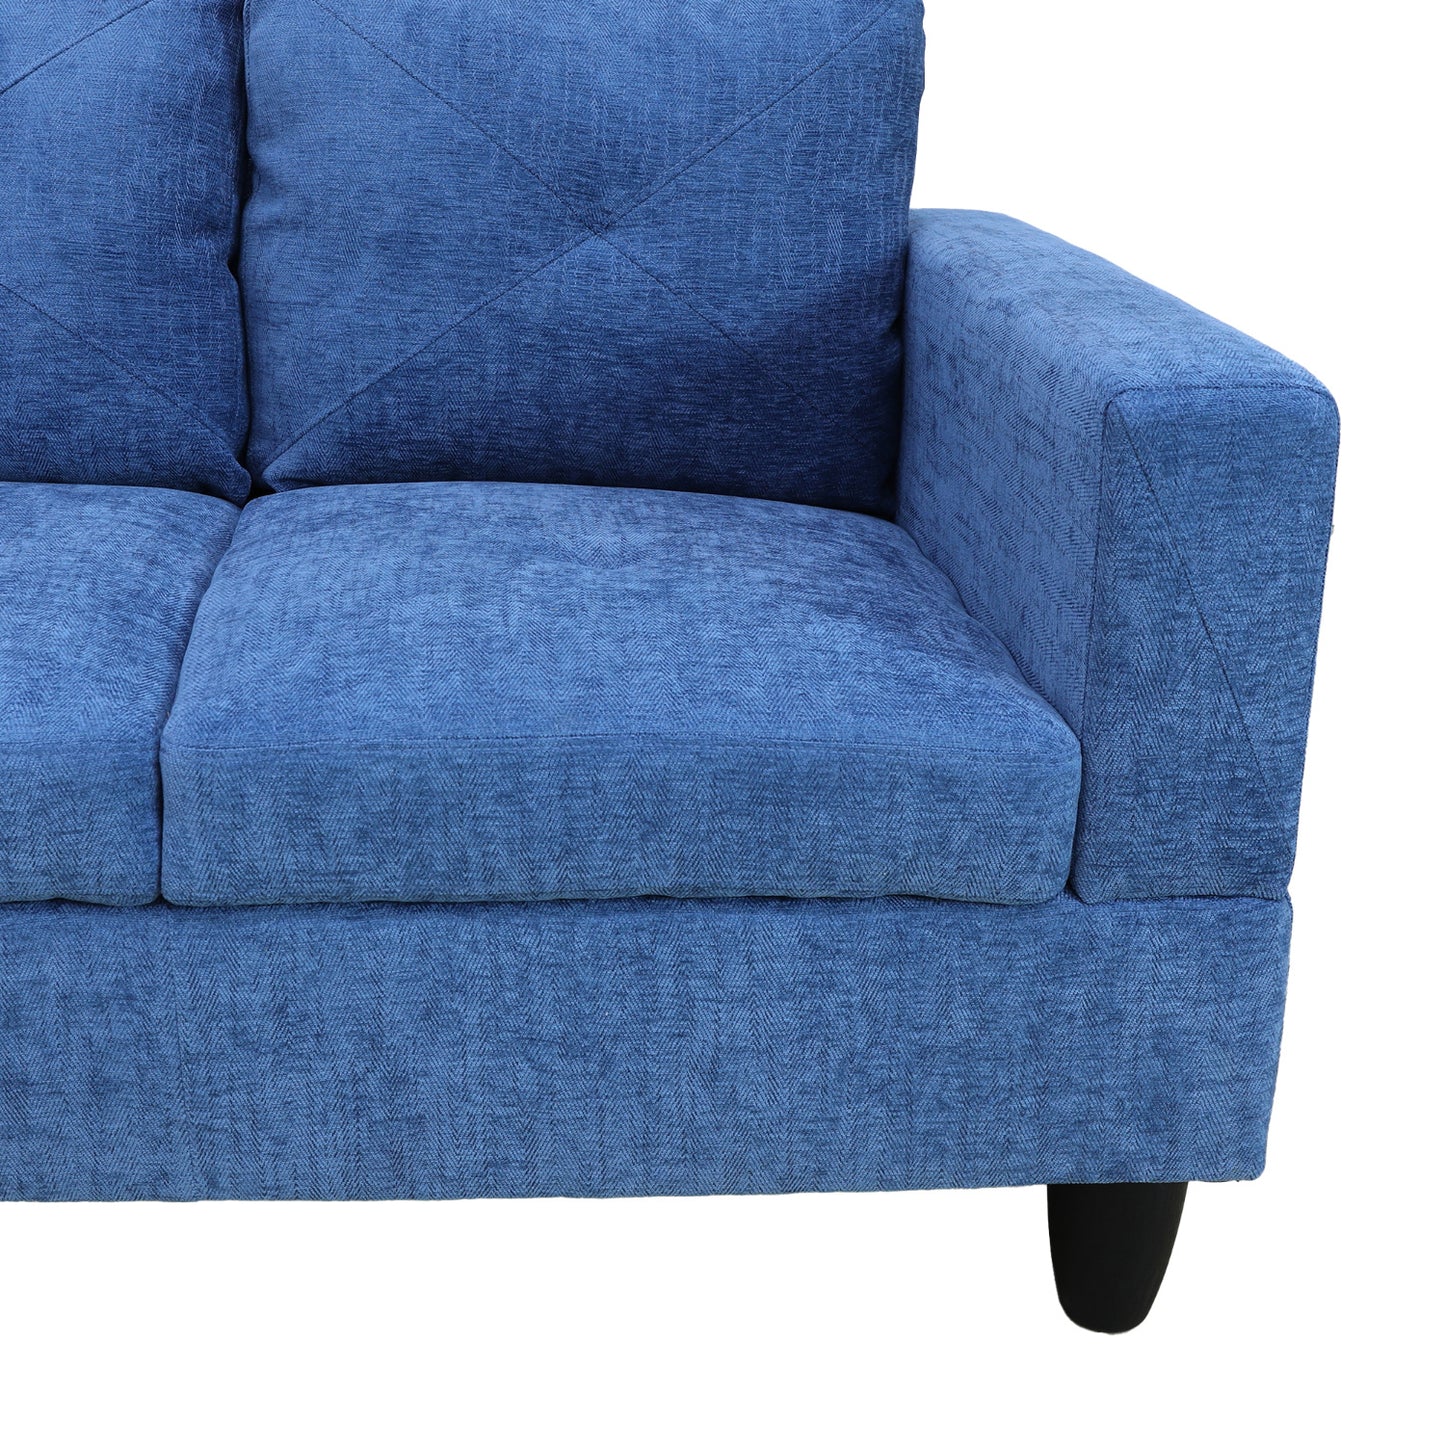 Blue Linen 3-Piece Living Room Sofa Set B